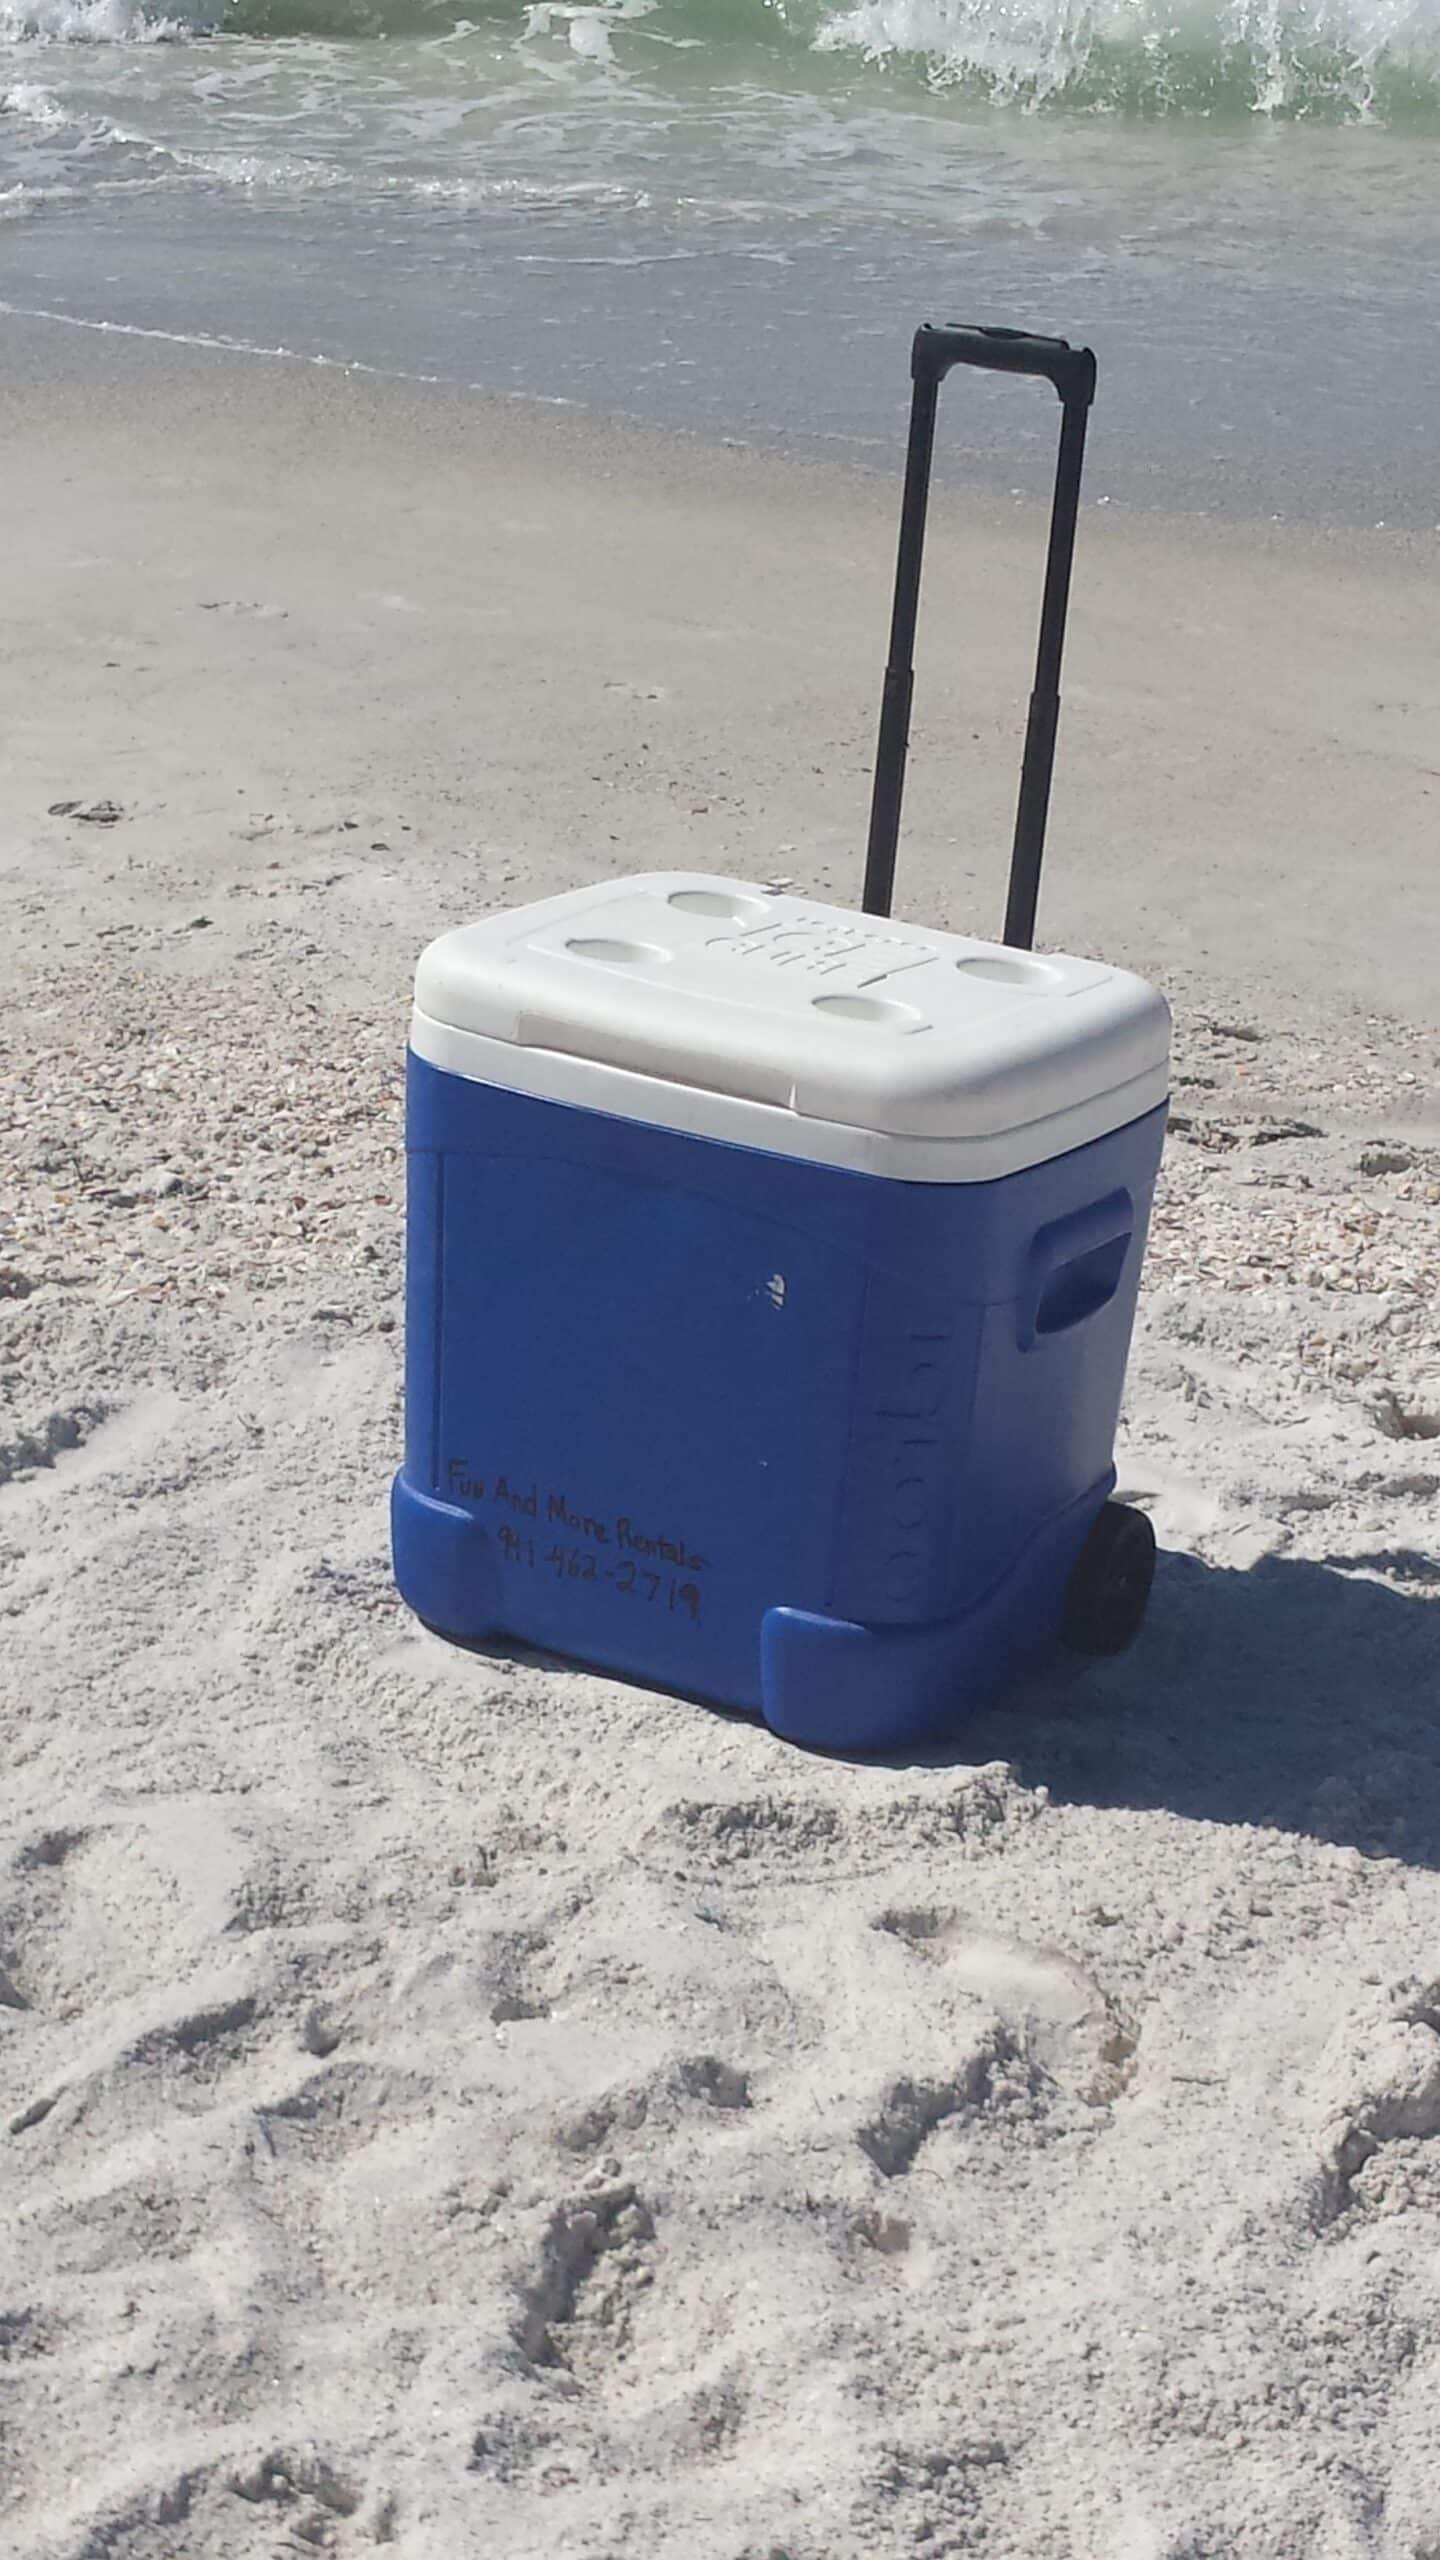 Beach Cooler at anna maria island beach